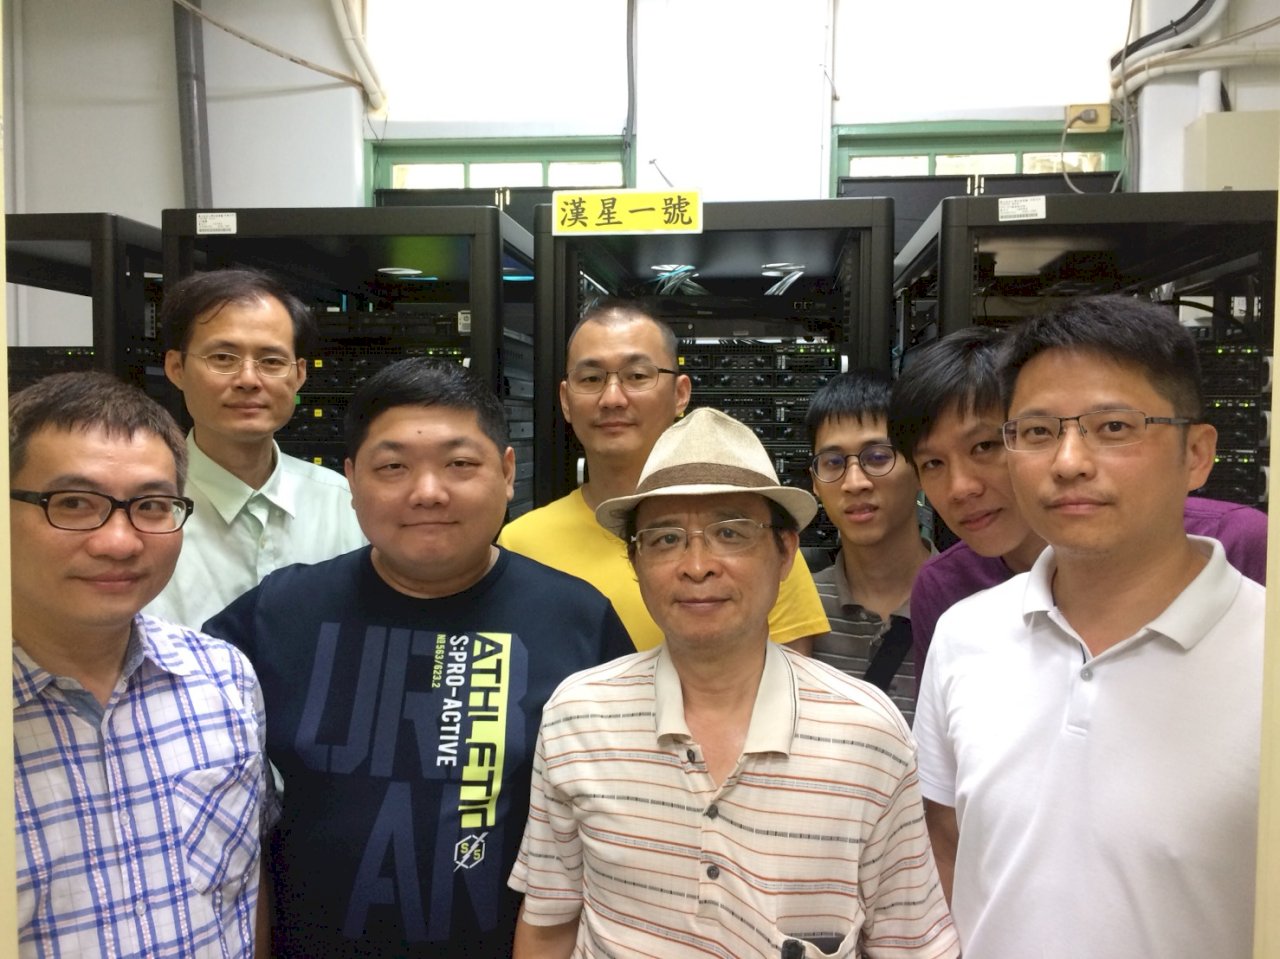 黃吉川發表世界第一超級電腦 盼為台灣找先機